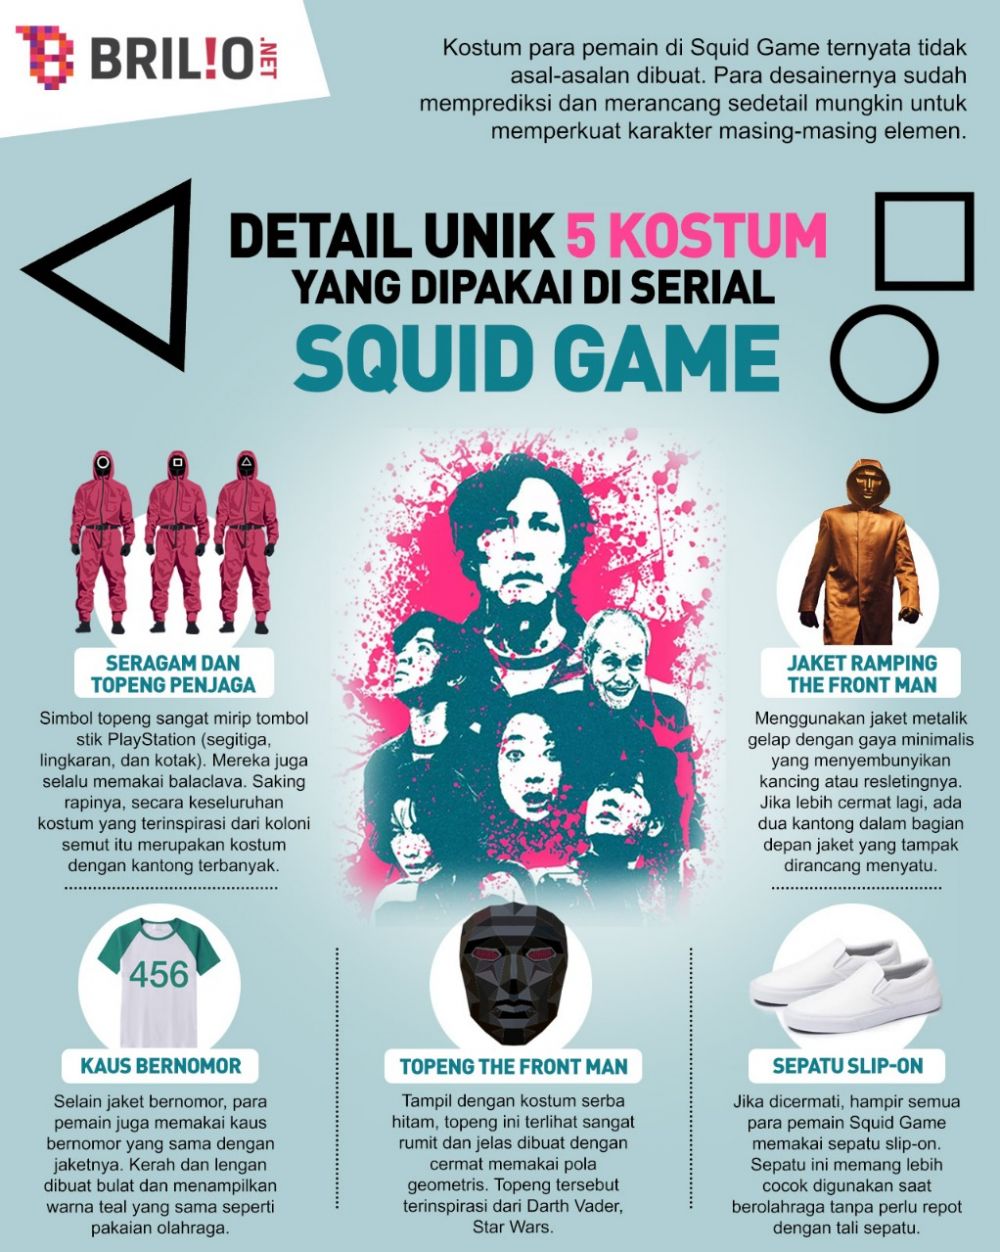 7 Detail unik semua kostum di serial Squid Game, topeng hingga sepatu